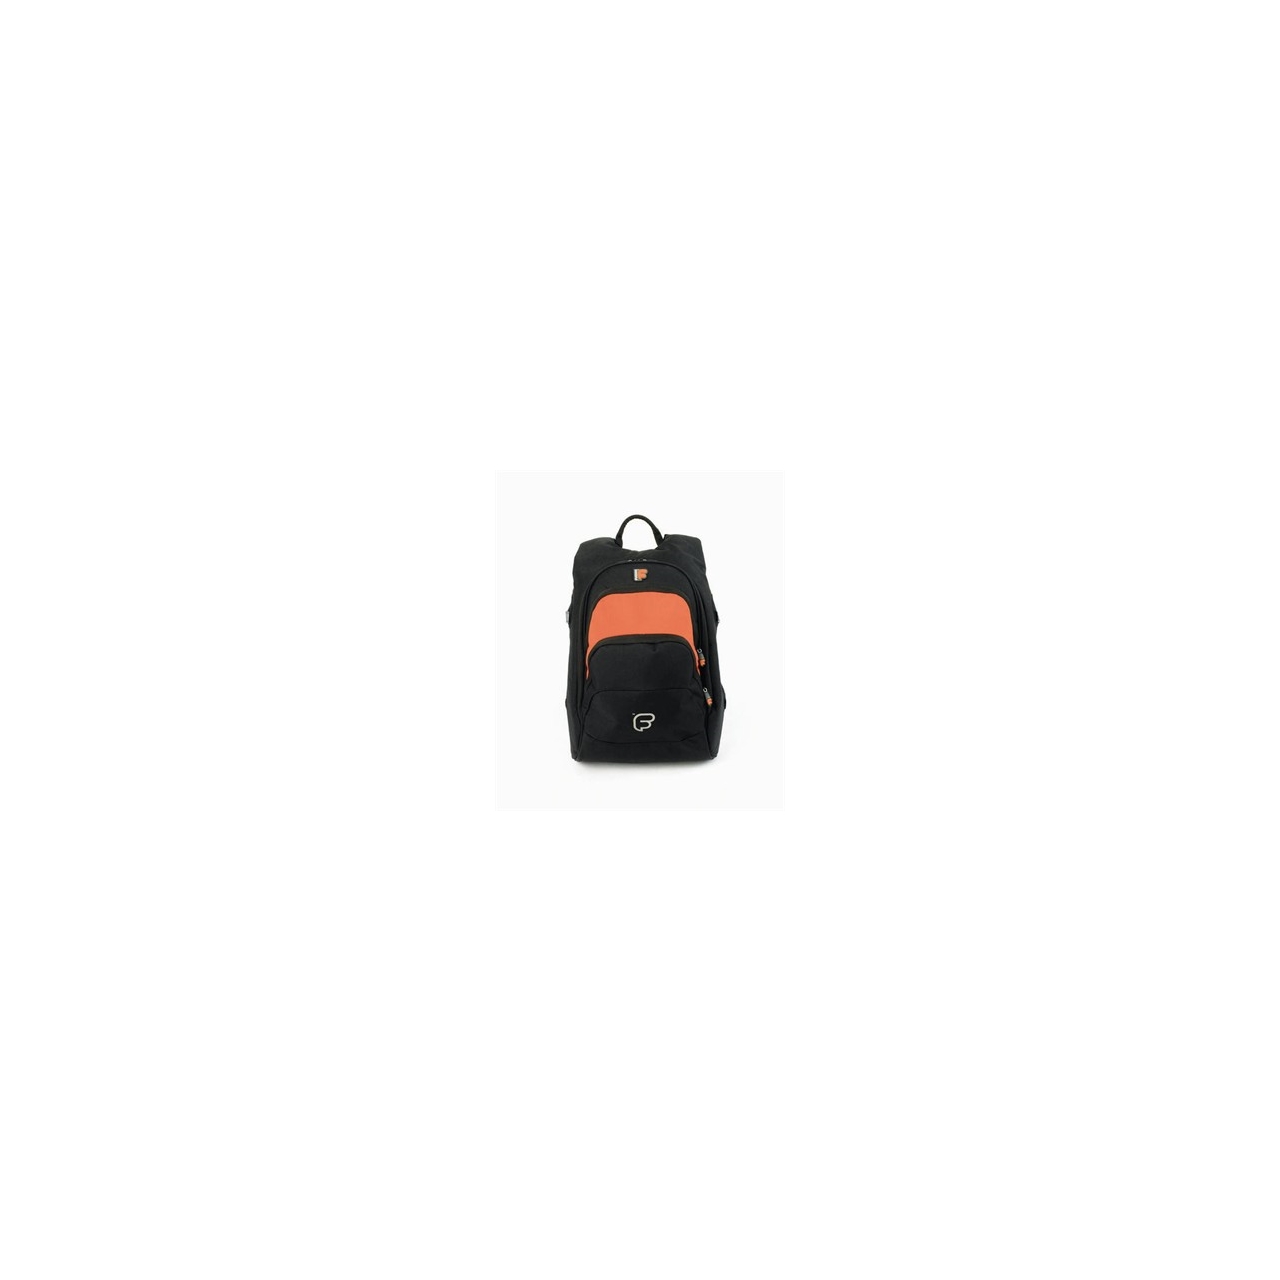 Fusion F1 Laptop Backpack Bag Black/Orange